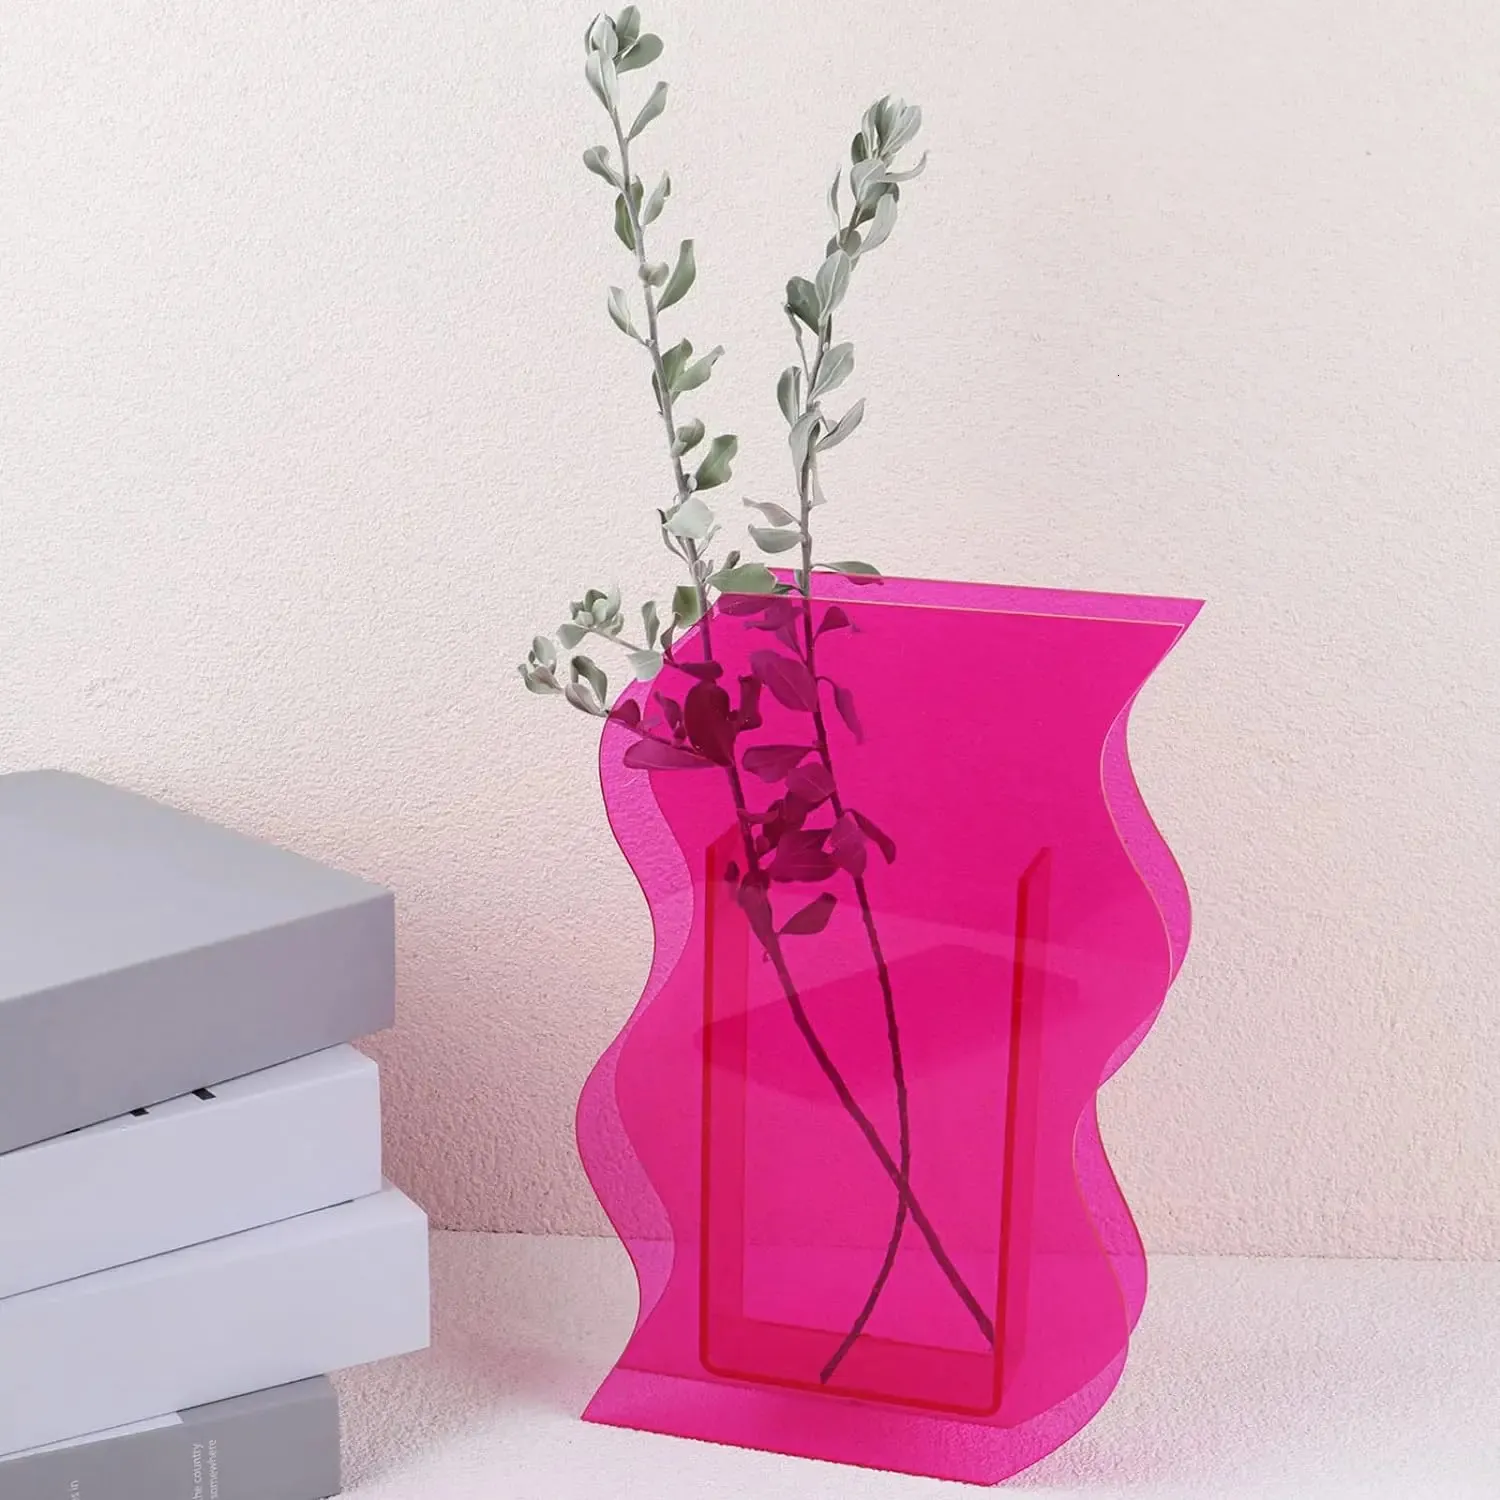 Akrylowy wazon kwiatowy do wystroju pokoju estetycznego nieregularna krągłowa fala plastikowa wazon dekoracyjny do sypialni stół do salonu - różowy 240417